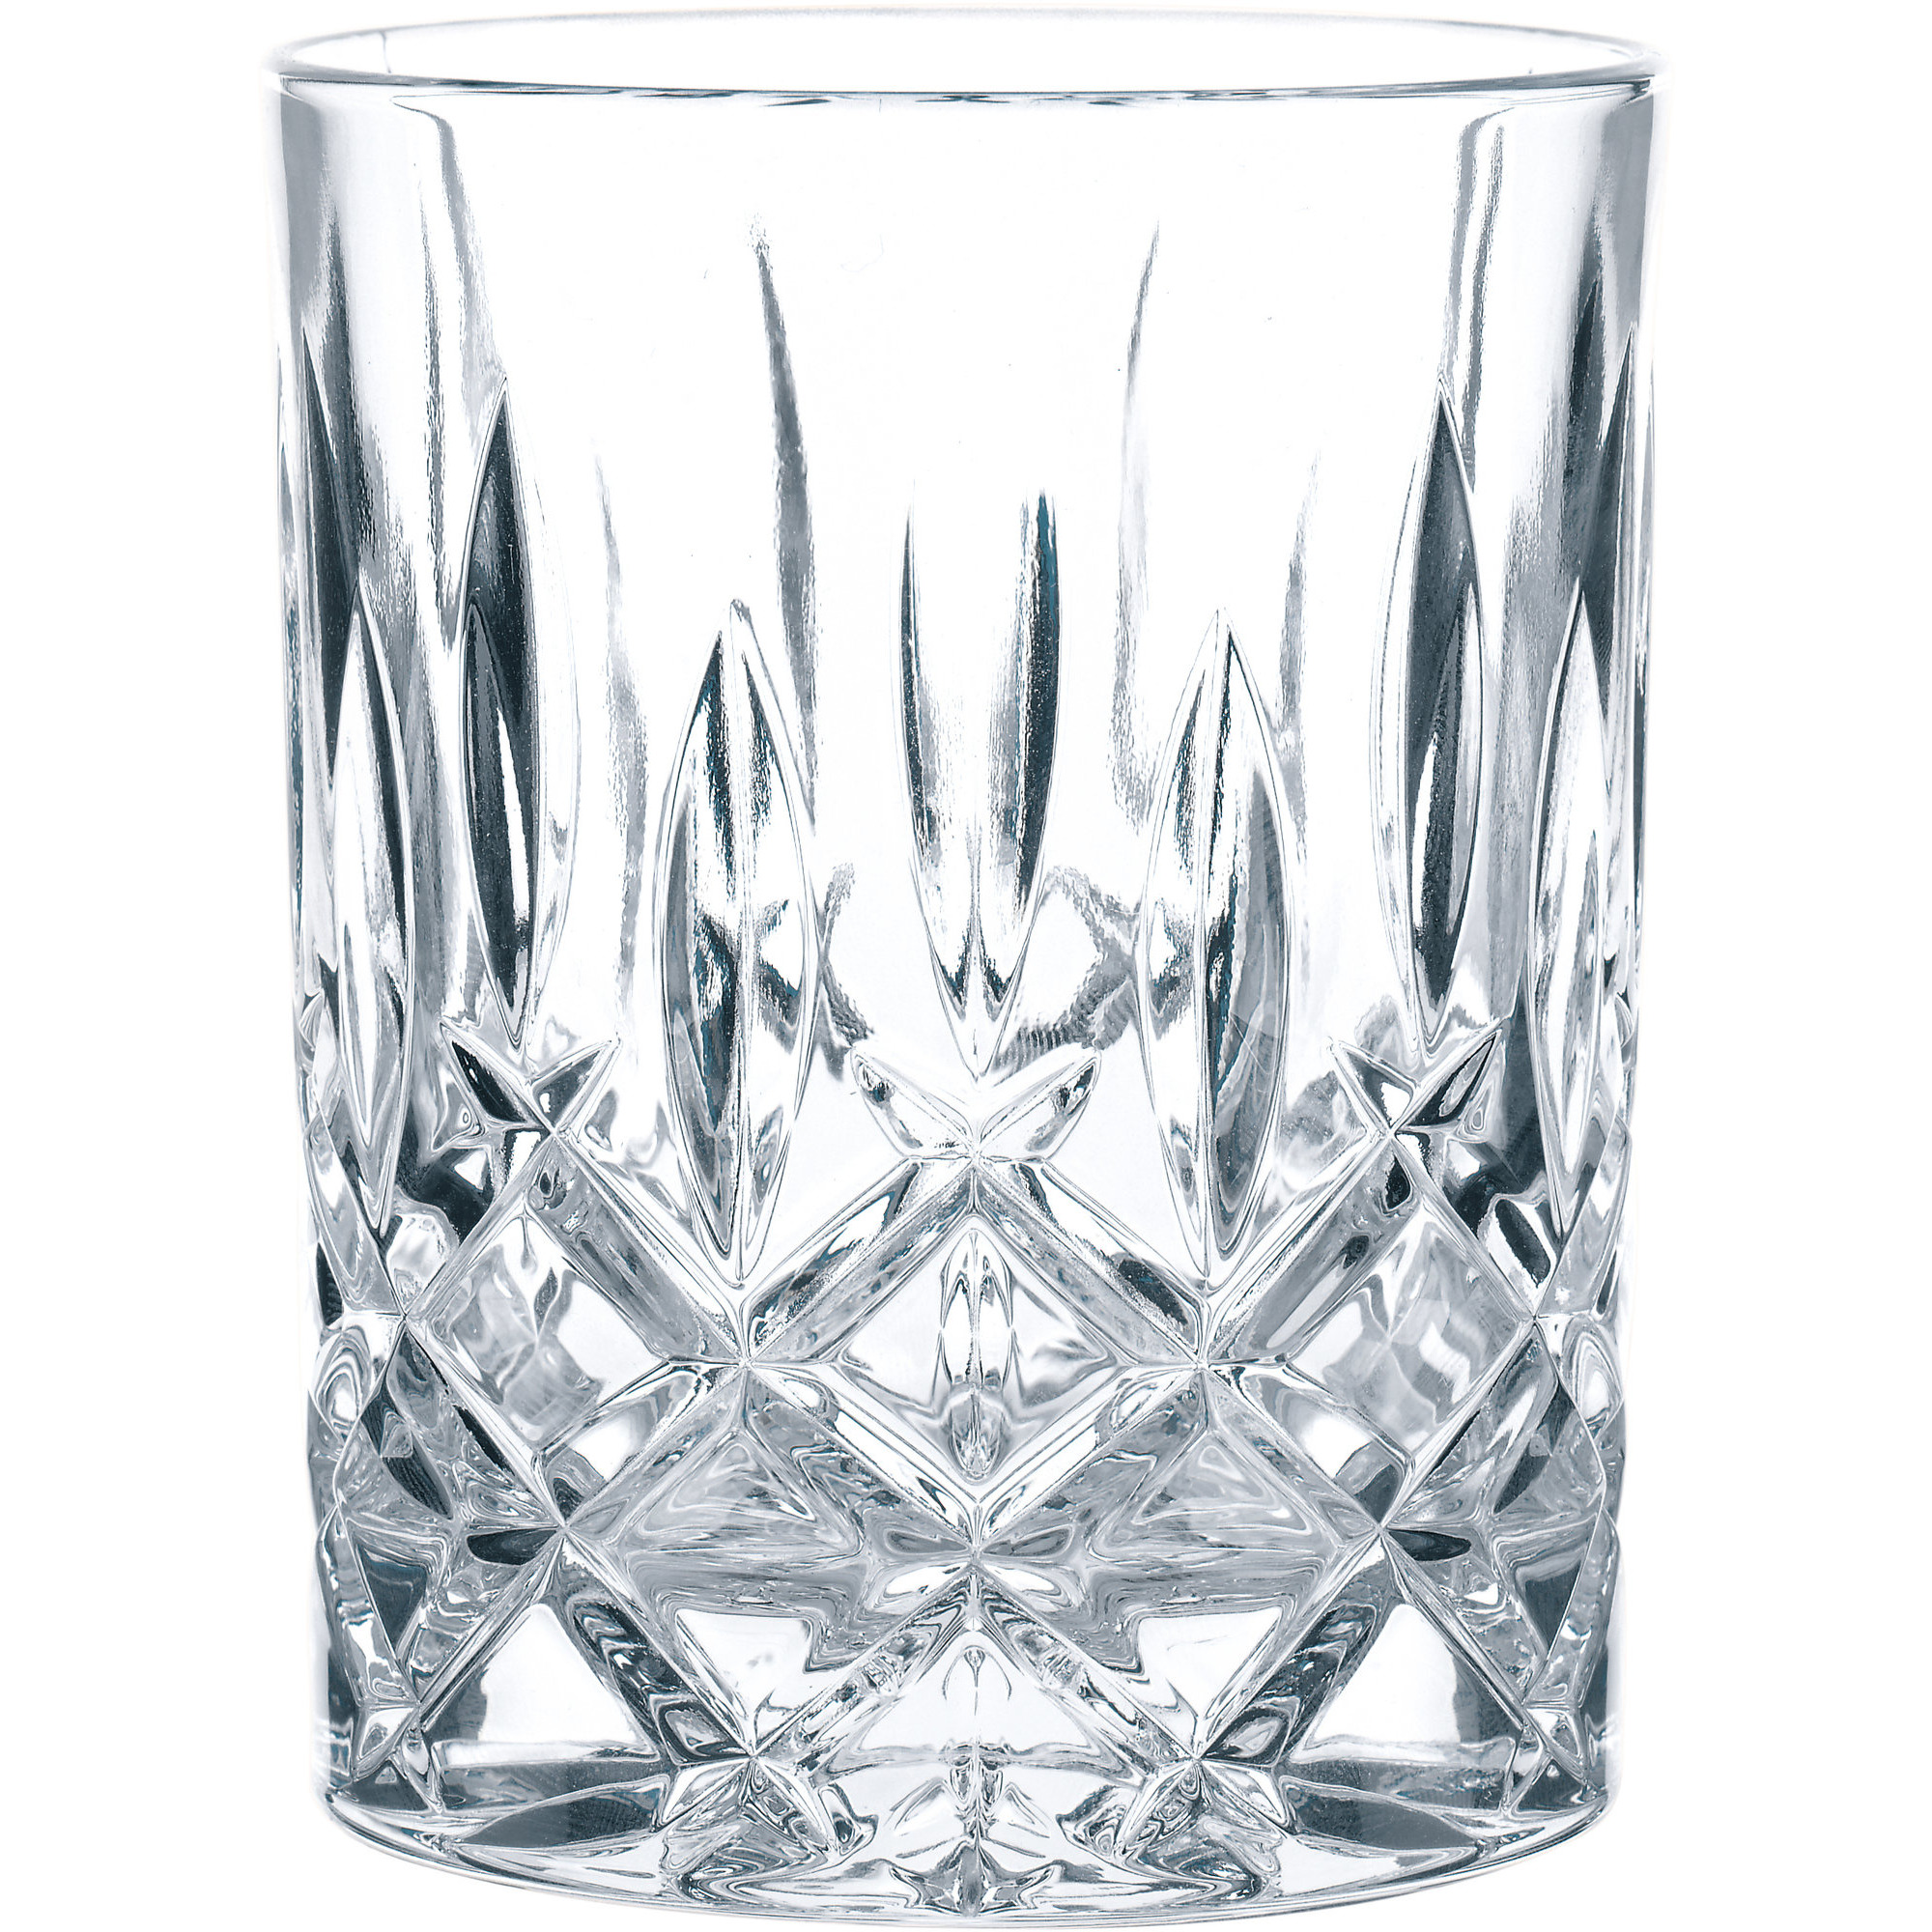 #1 på vores liste over whiskyglass er Whiskyglas